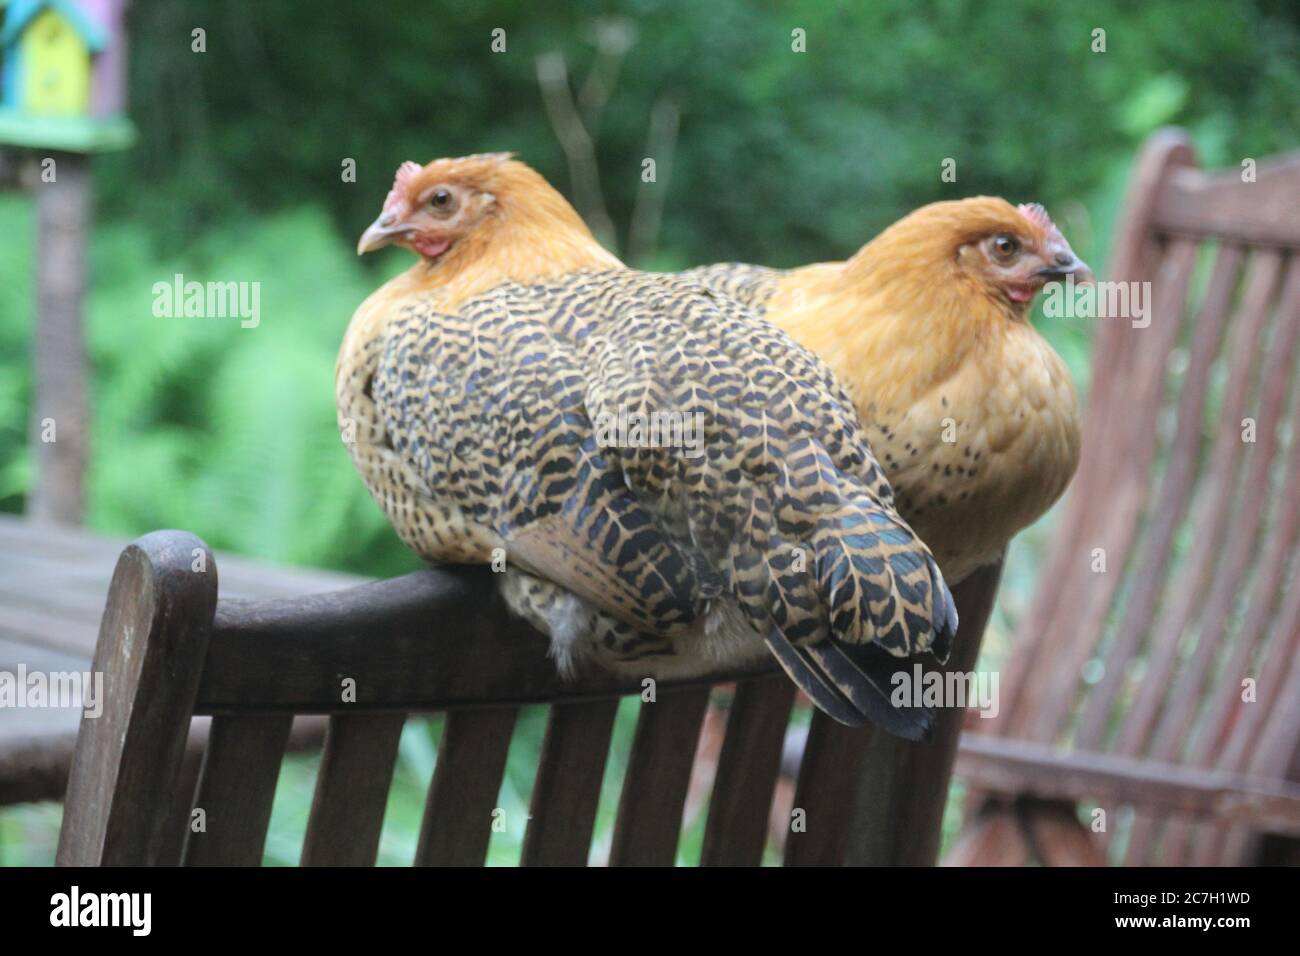 Ostfriesische Moewen Chicken sitting on patio chair detail Stock Photo